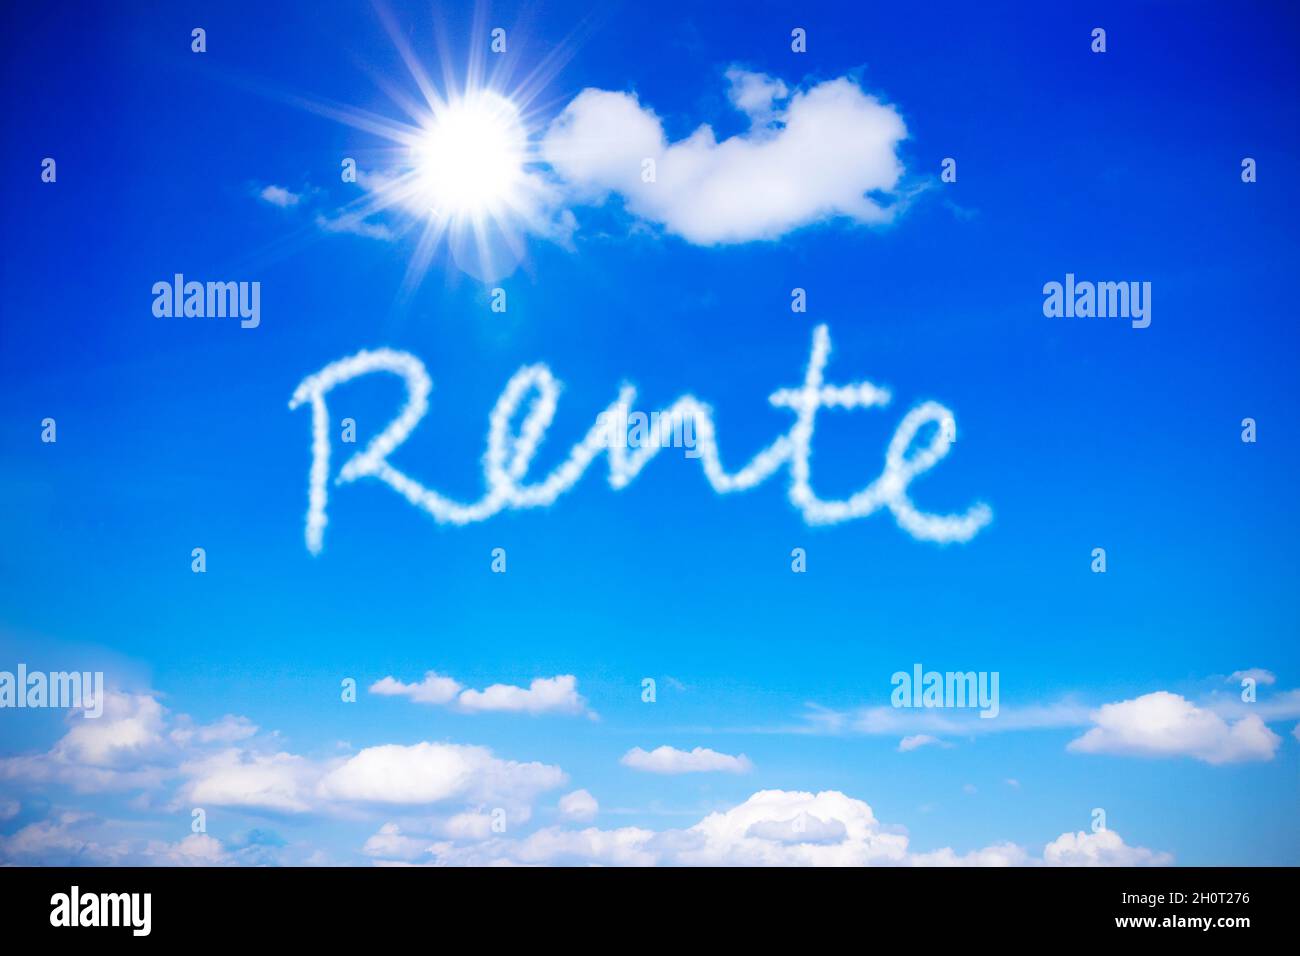 Rente escrito en un cielo azul soleado, palabra alemana que significa jubilación o pensión de vejez, símbolo de la anticipación de vacaciones interminables. Foto de stock